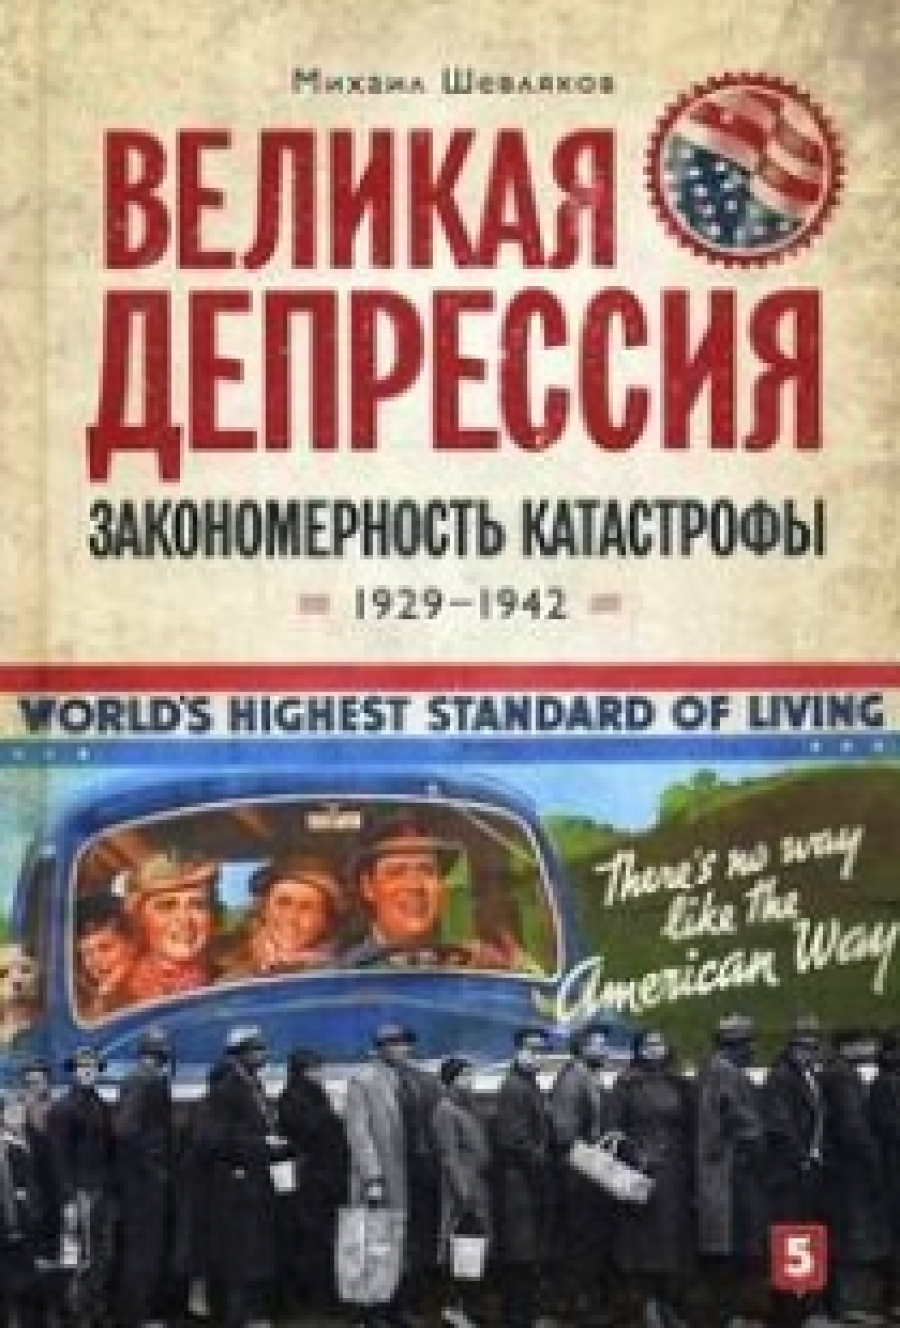 Шевляков М. Великая депрессия: закономерность катастрофы 1929-1942 